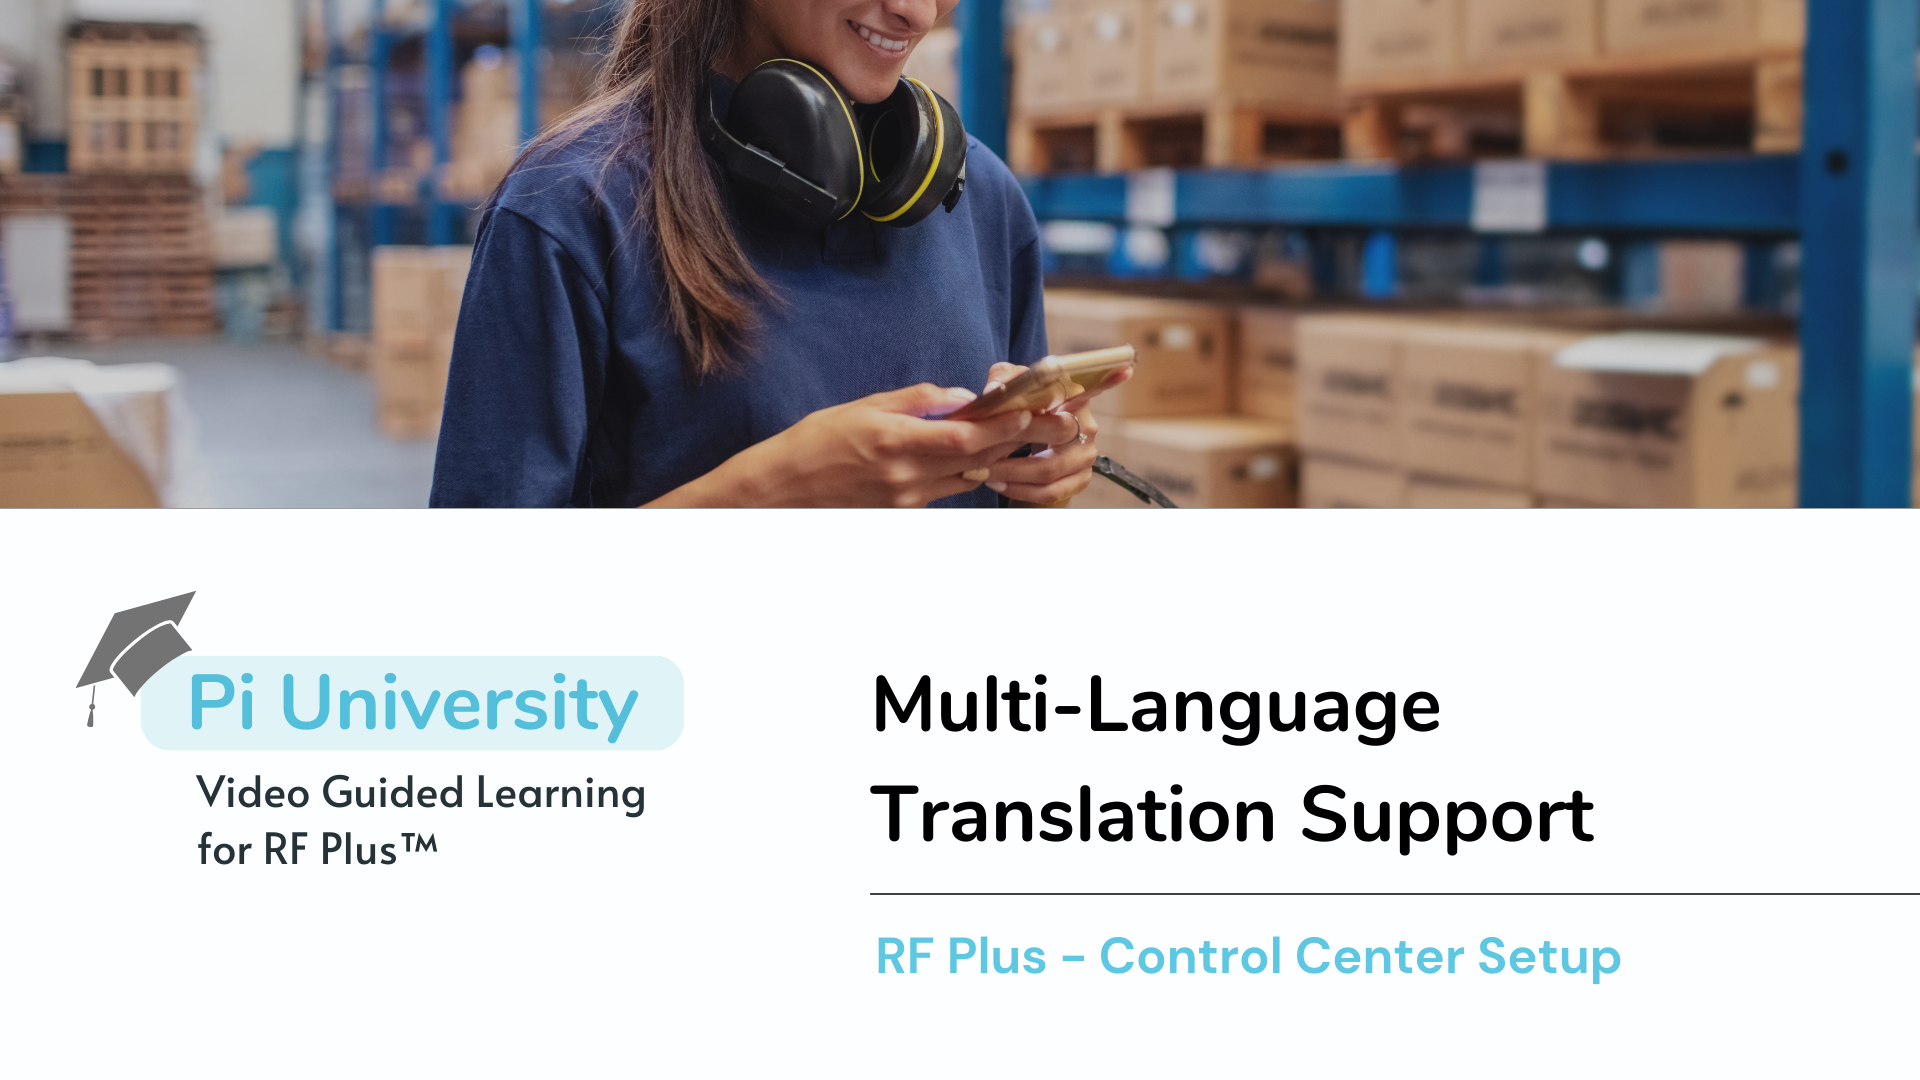 RF Plus™ Multi-Language Support